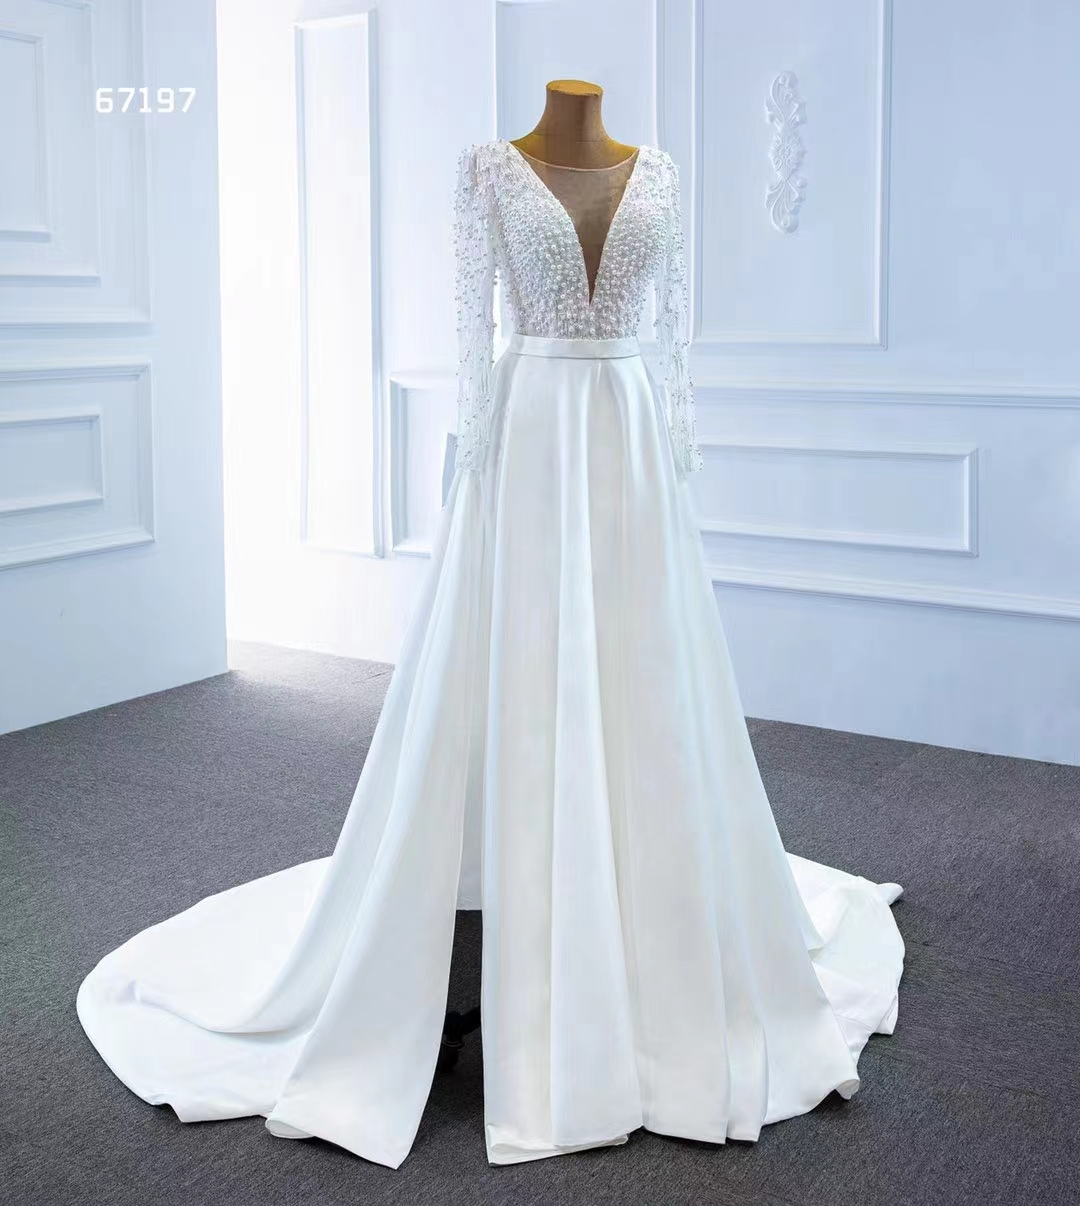 Elegant bröllopsklänningstyger pärlstav och paljetter brudklänningar SM67197